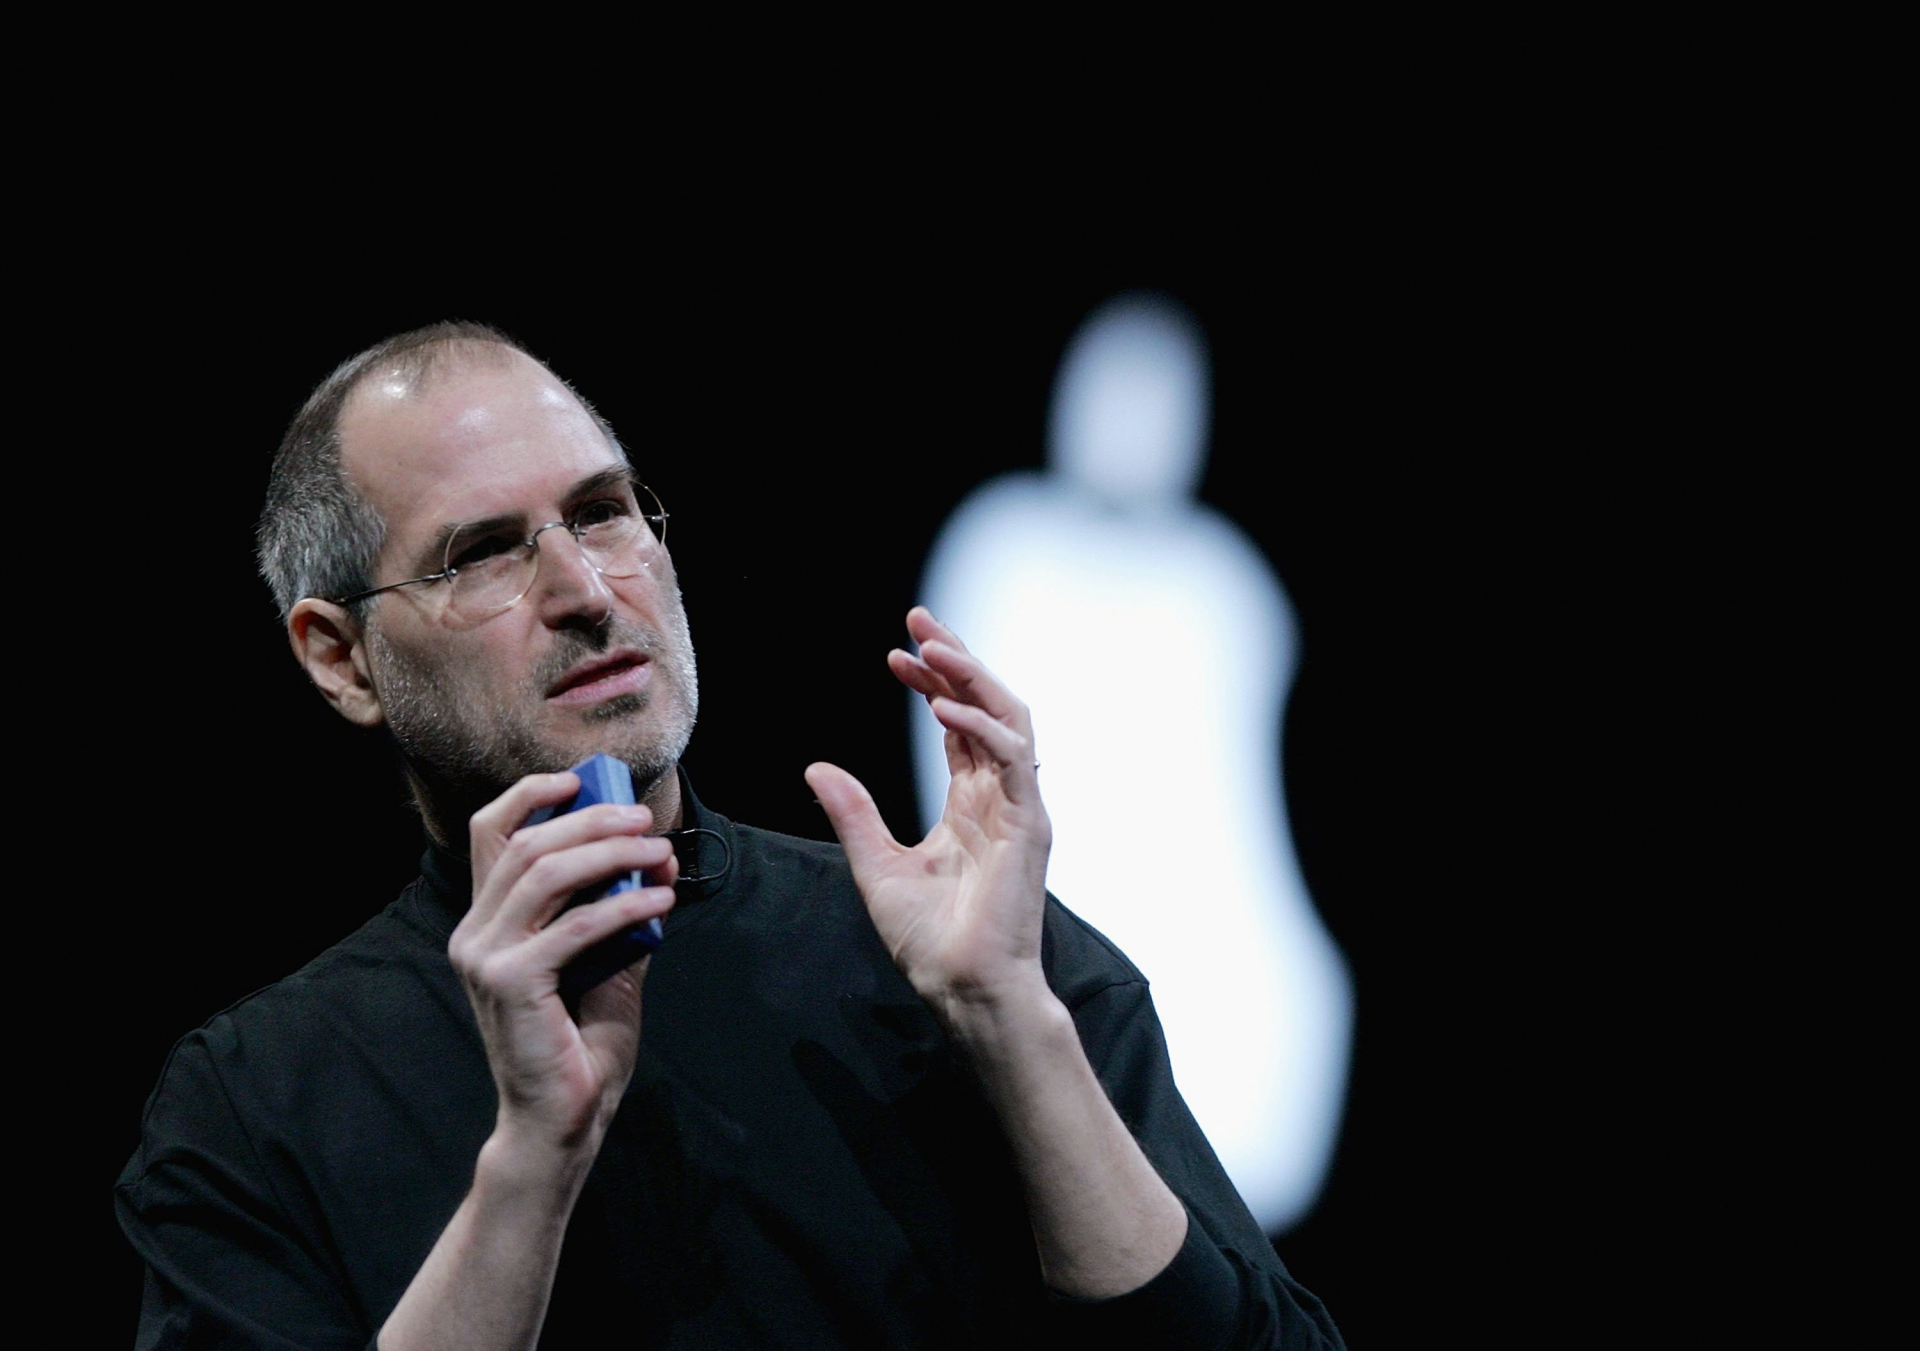 Steve Jobs từng hé lộ điểm khác biệt lớn nhất giữa người thành công và kẻ mộng mơ: Không dám hỏi thì sẽ chẳng có gì